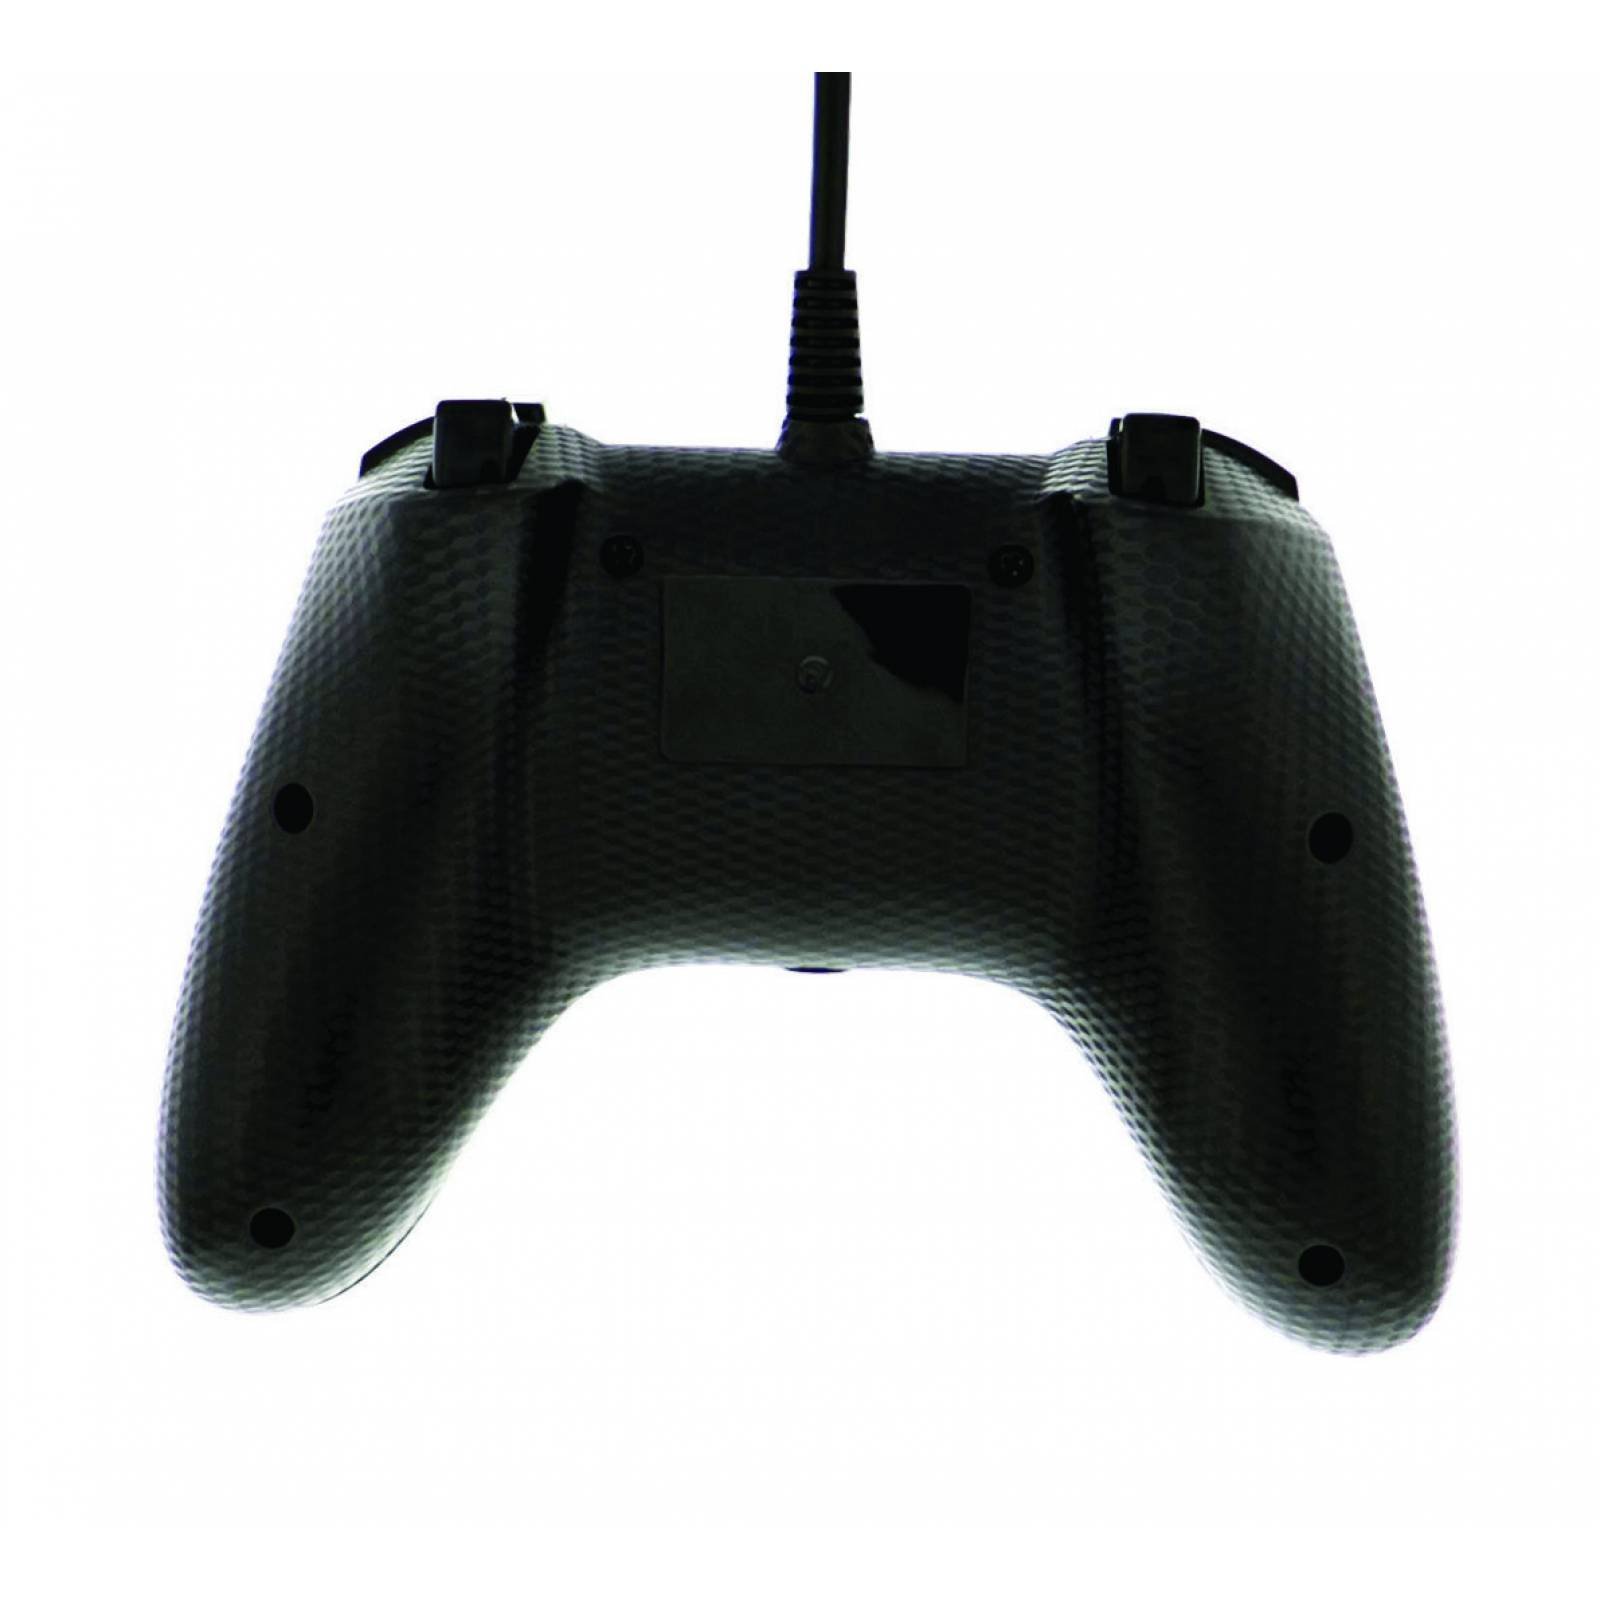 Control Mando Mini Xbox One Negro Accesorio